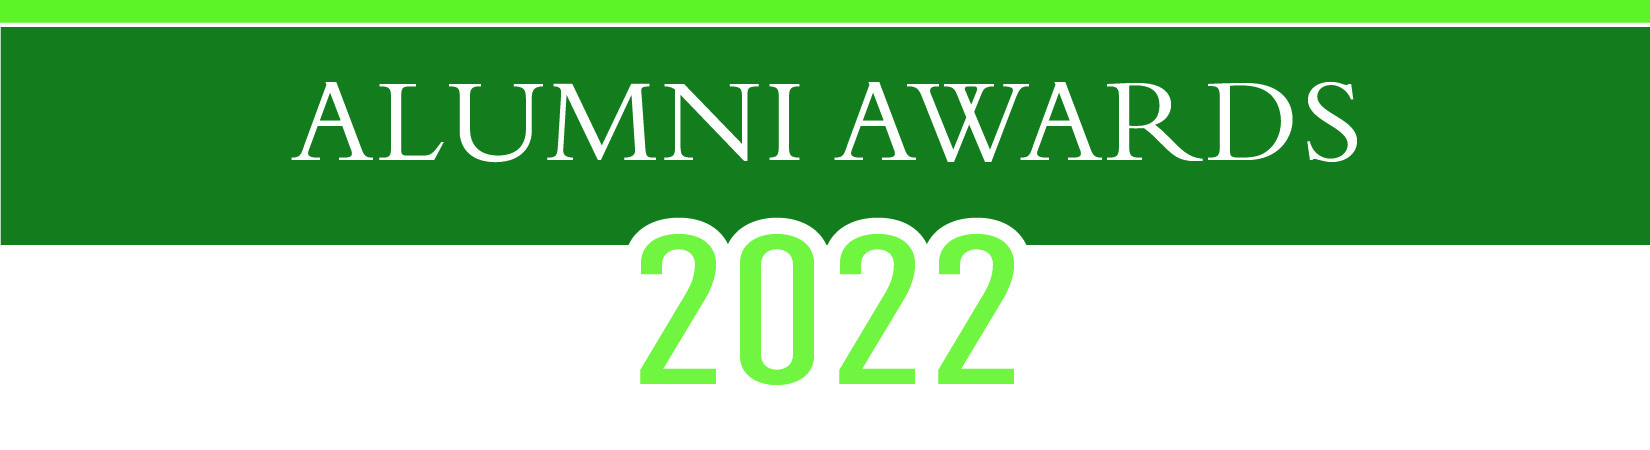 Alumni Awards 2022